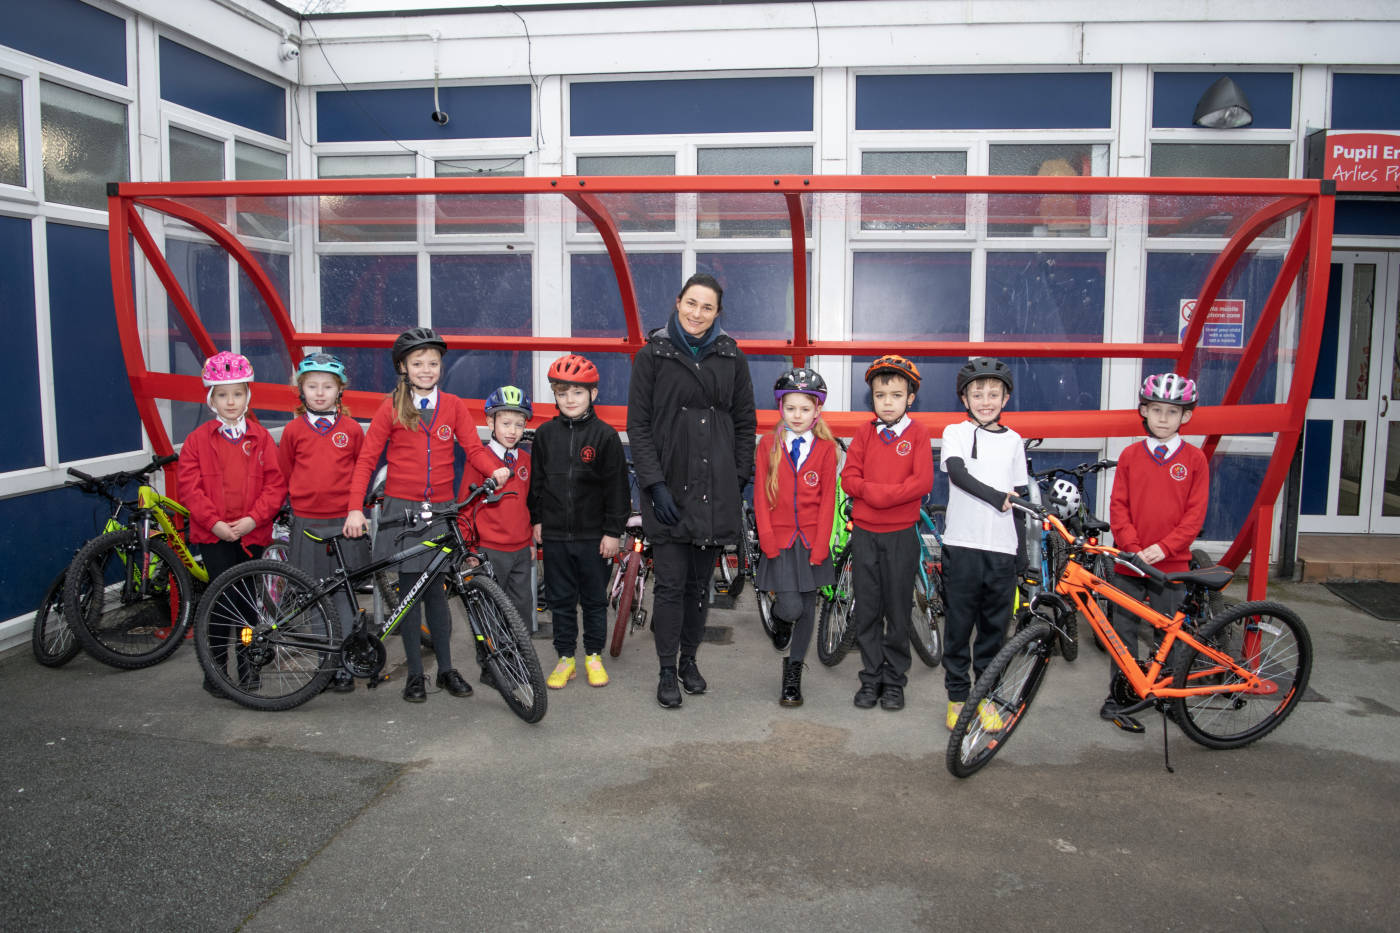 Dame Sarah Storey launching cycle hub